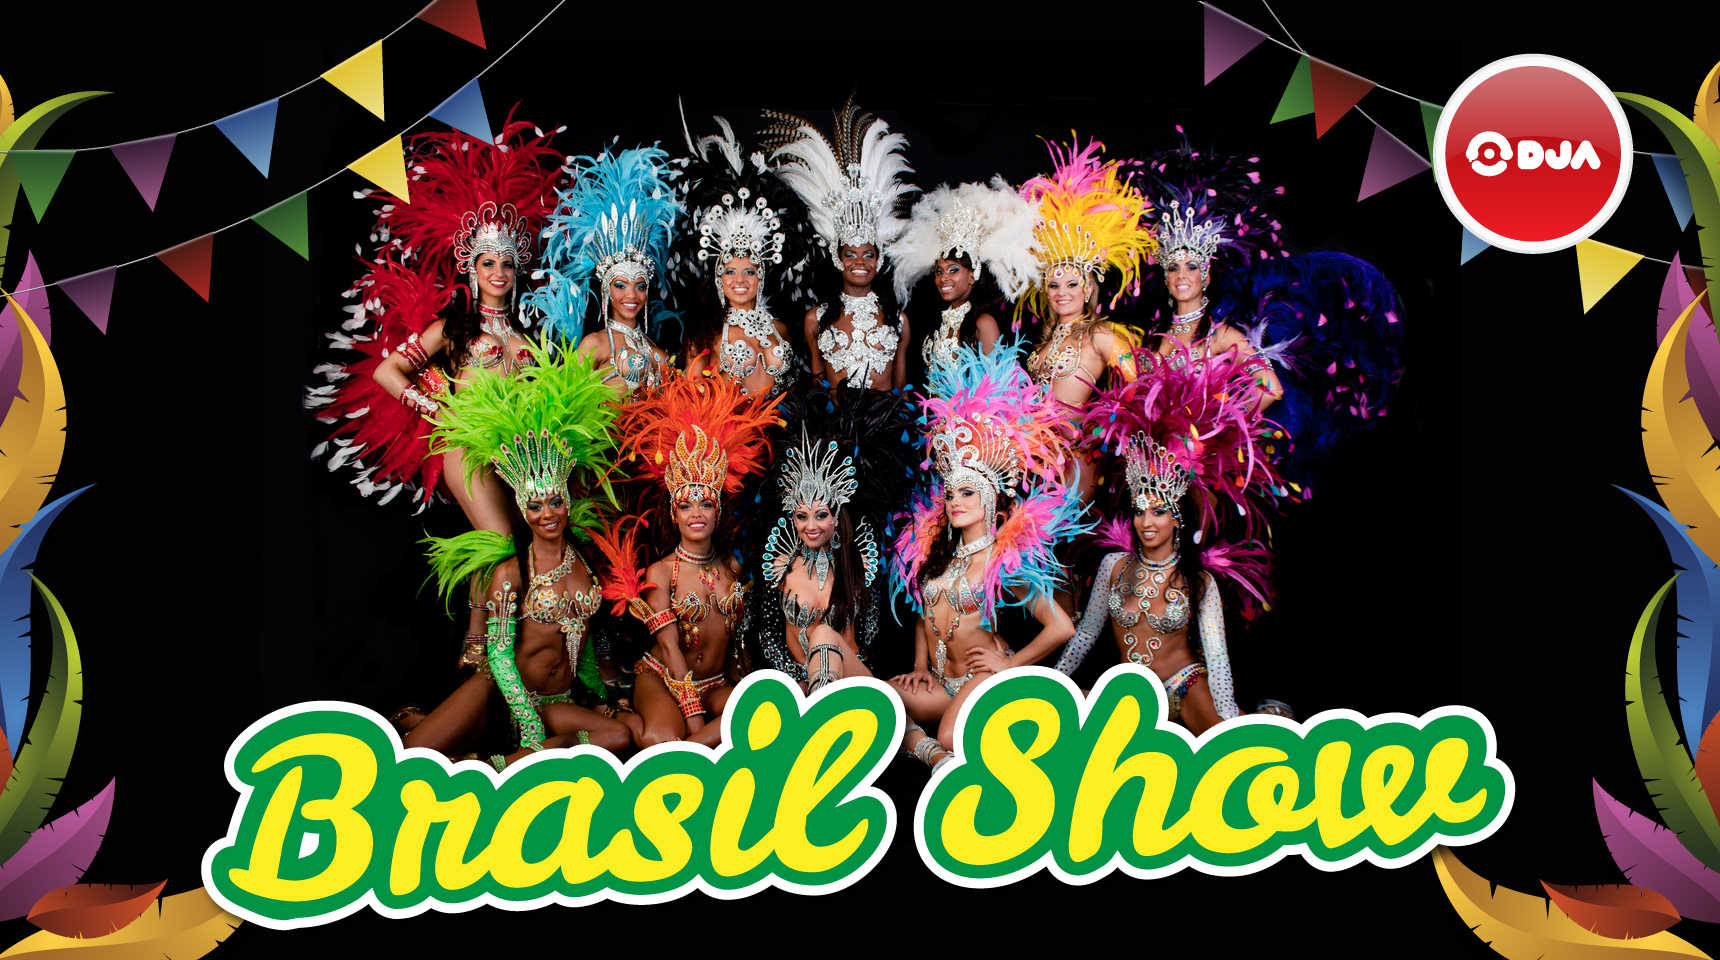 dja_intrattenimento_brasil_show